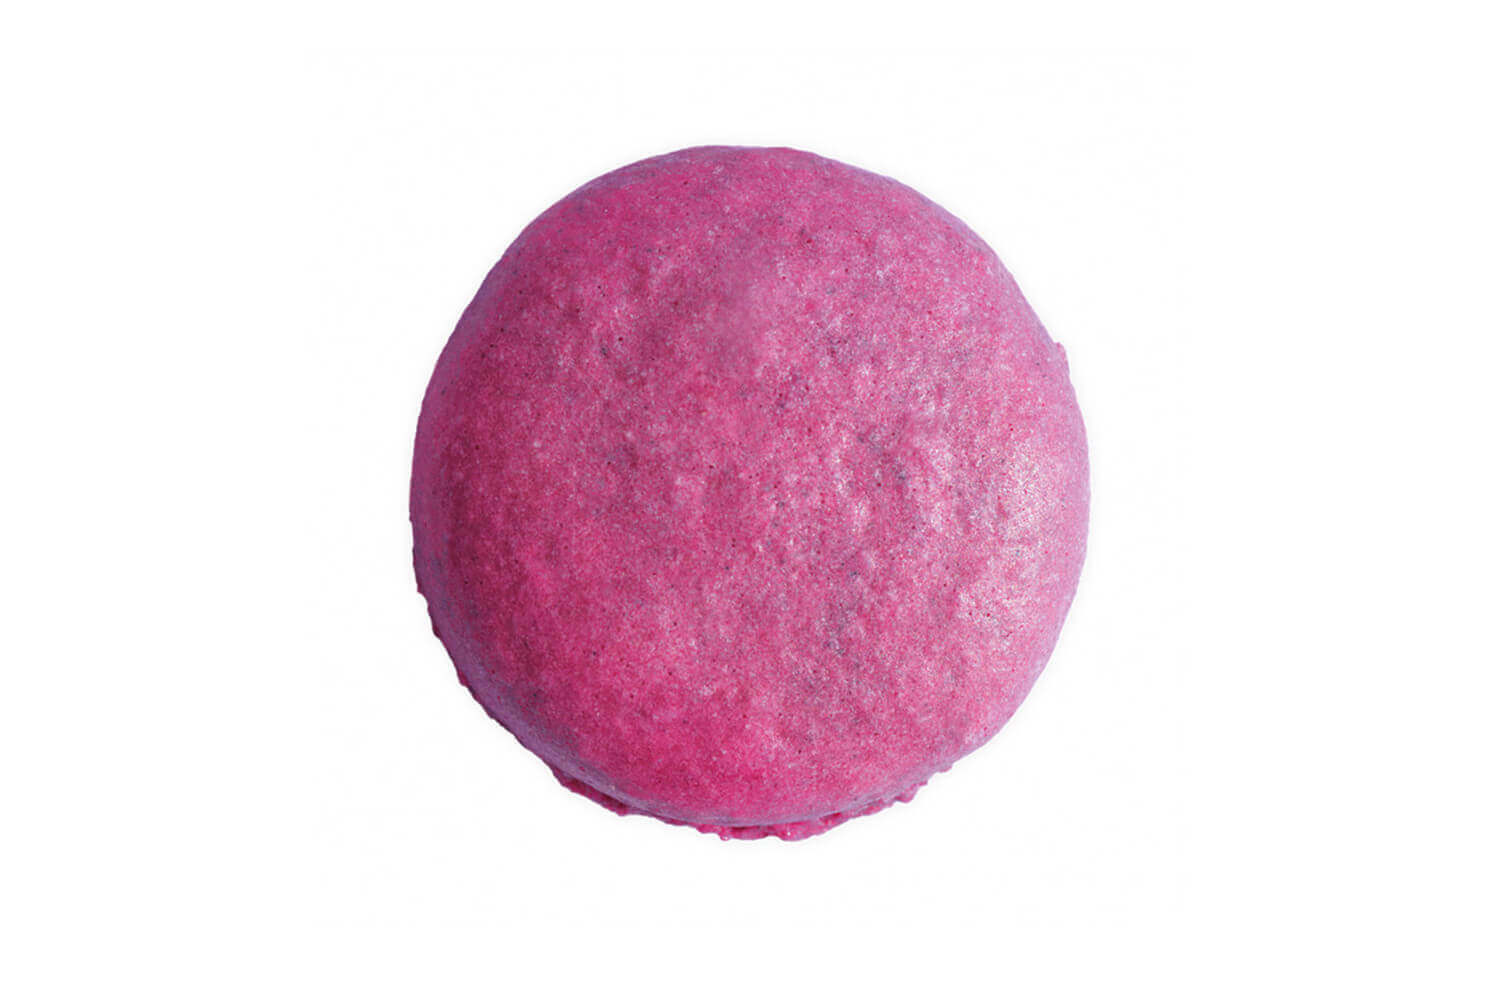 Scrapcooking - Colorant Alimentaire de Surface Rouge Rubis 5 g - Les  Secrets du Chef